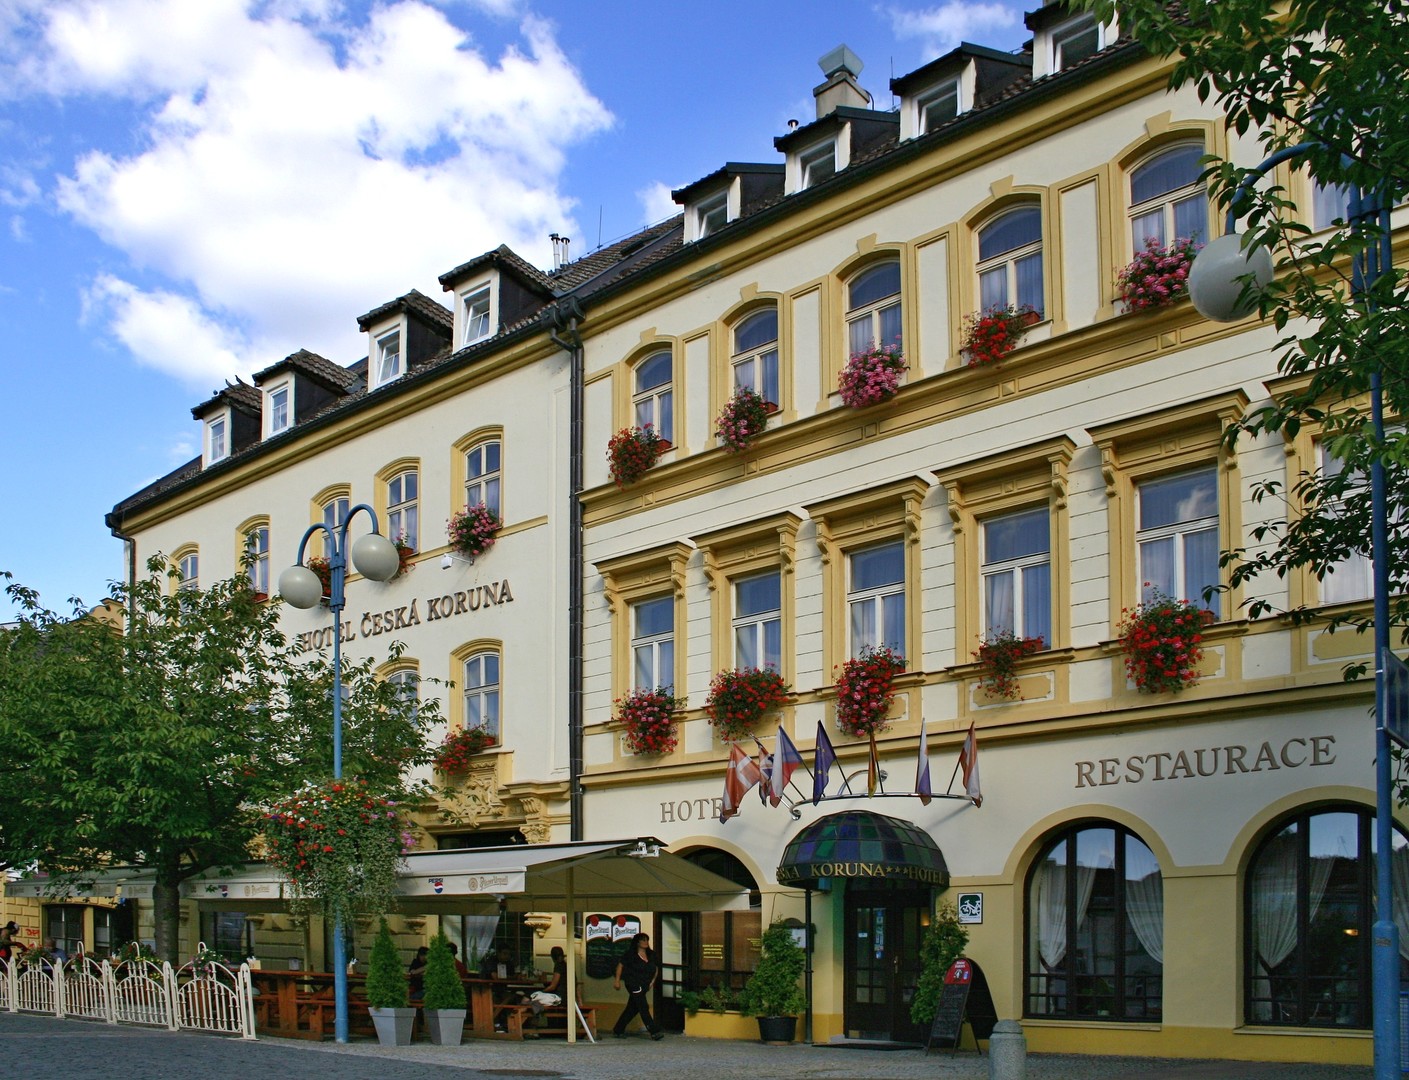 Obrázek hotelu Česká koruna